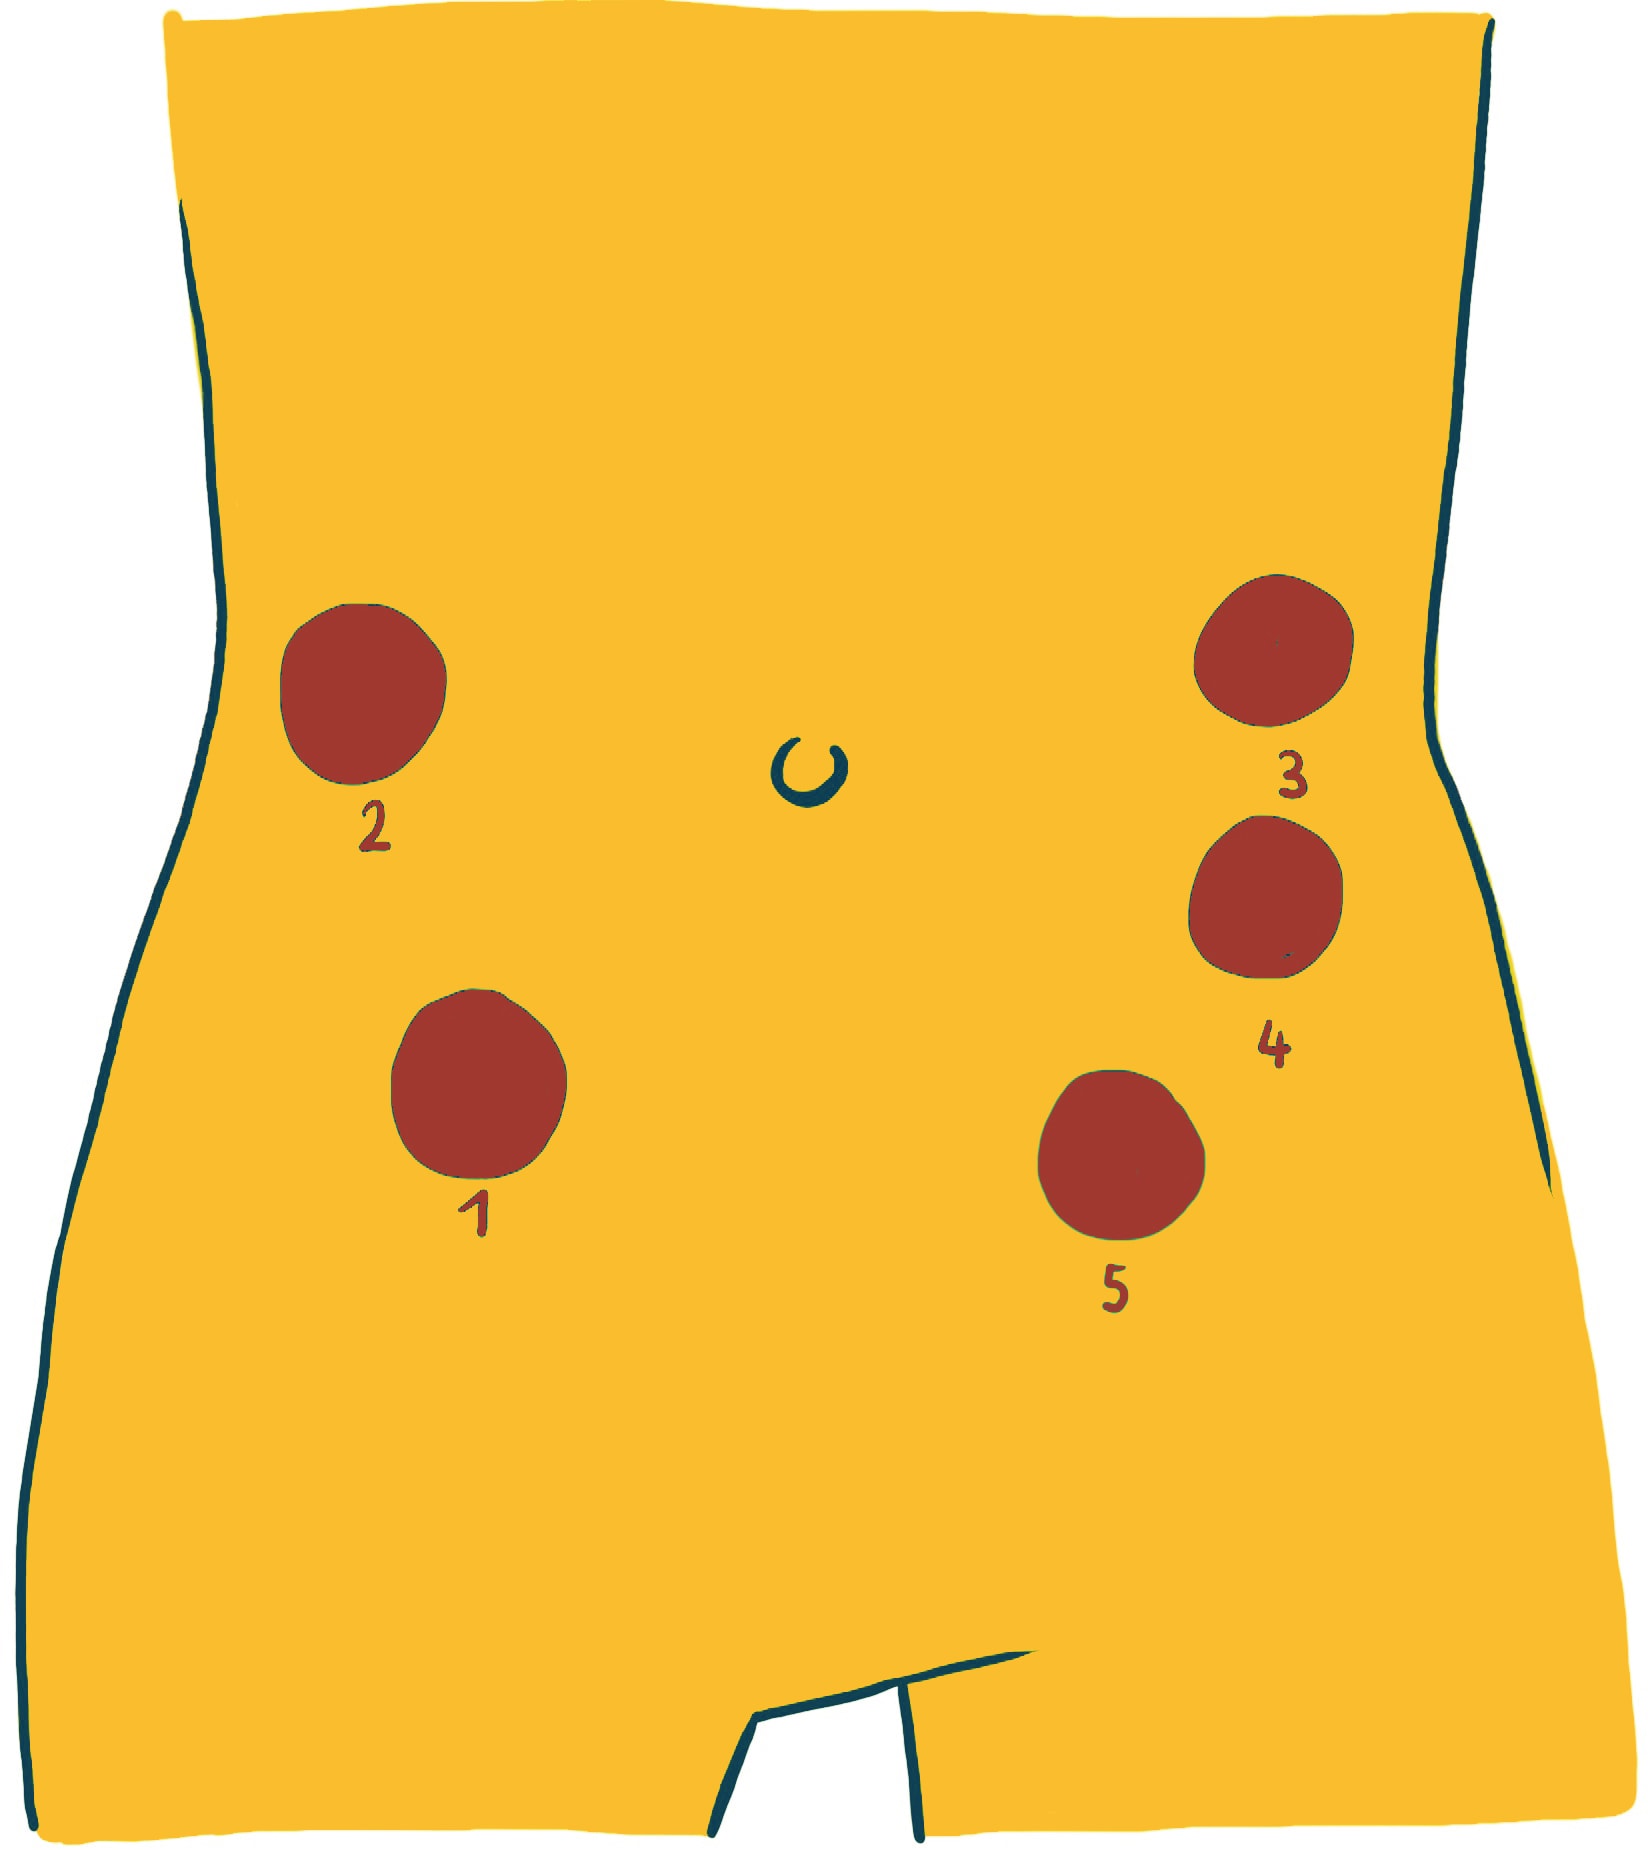 Colonmassage: Abbildung eines gelben Torsos mit fünf beschrifteten roten Punkten. Die Punkte sind von unten links nach oben rechts mit 1, 2, 3, 4 und 5 nummeriert.